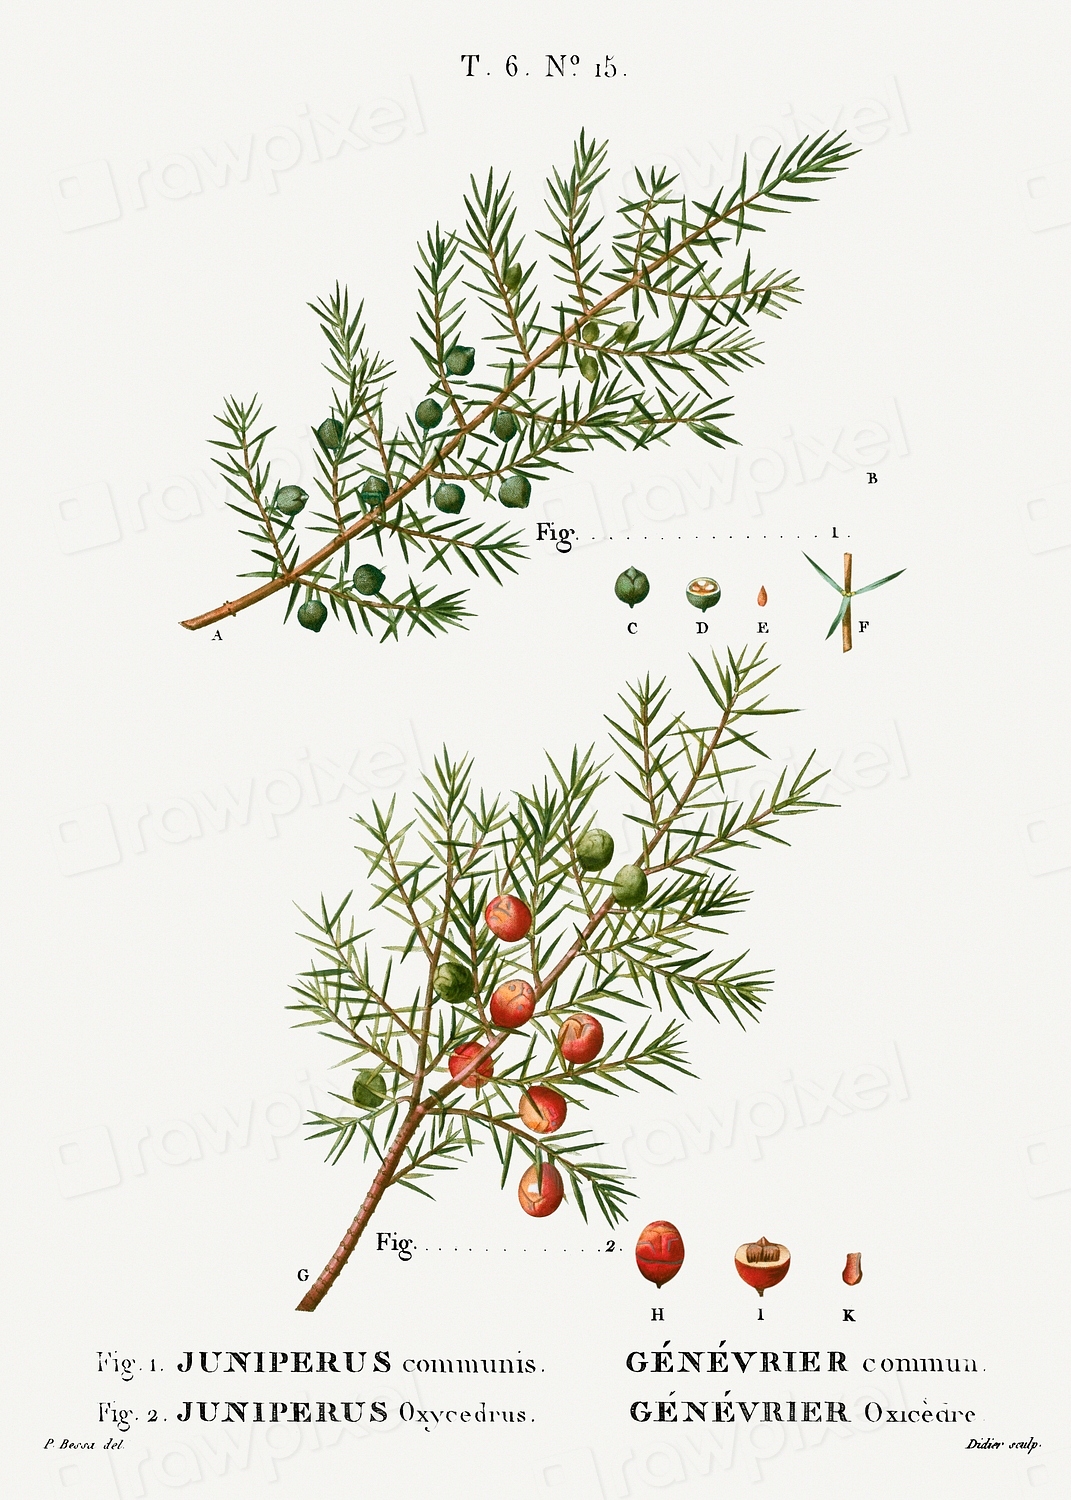 Common juniper, Juniperus communis and | Free Photo Illustration - rawpixel